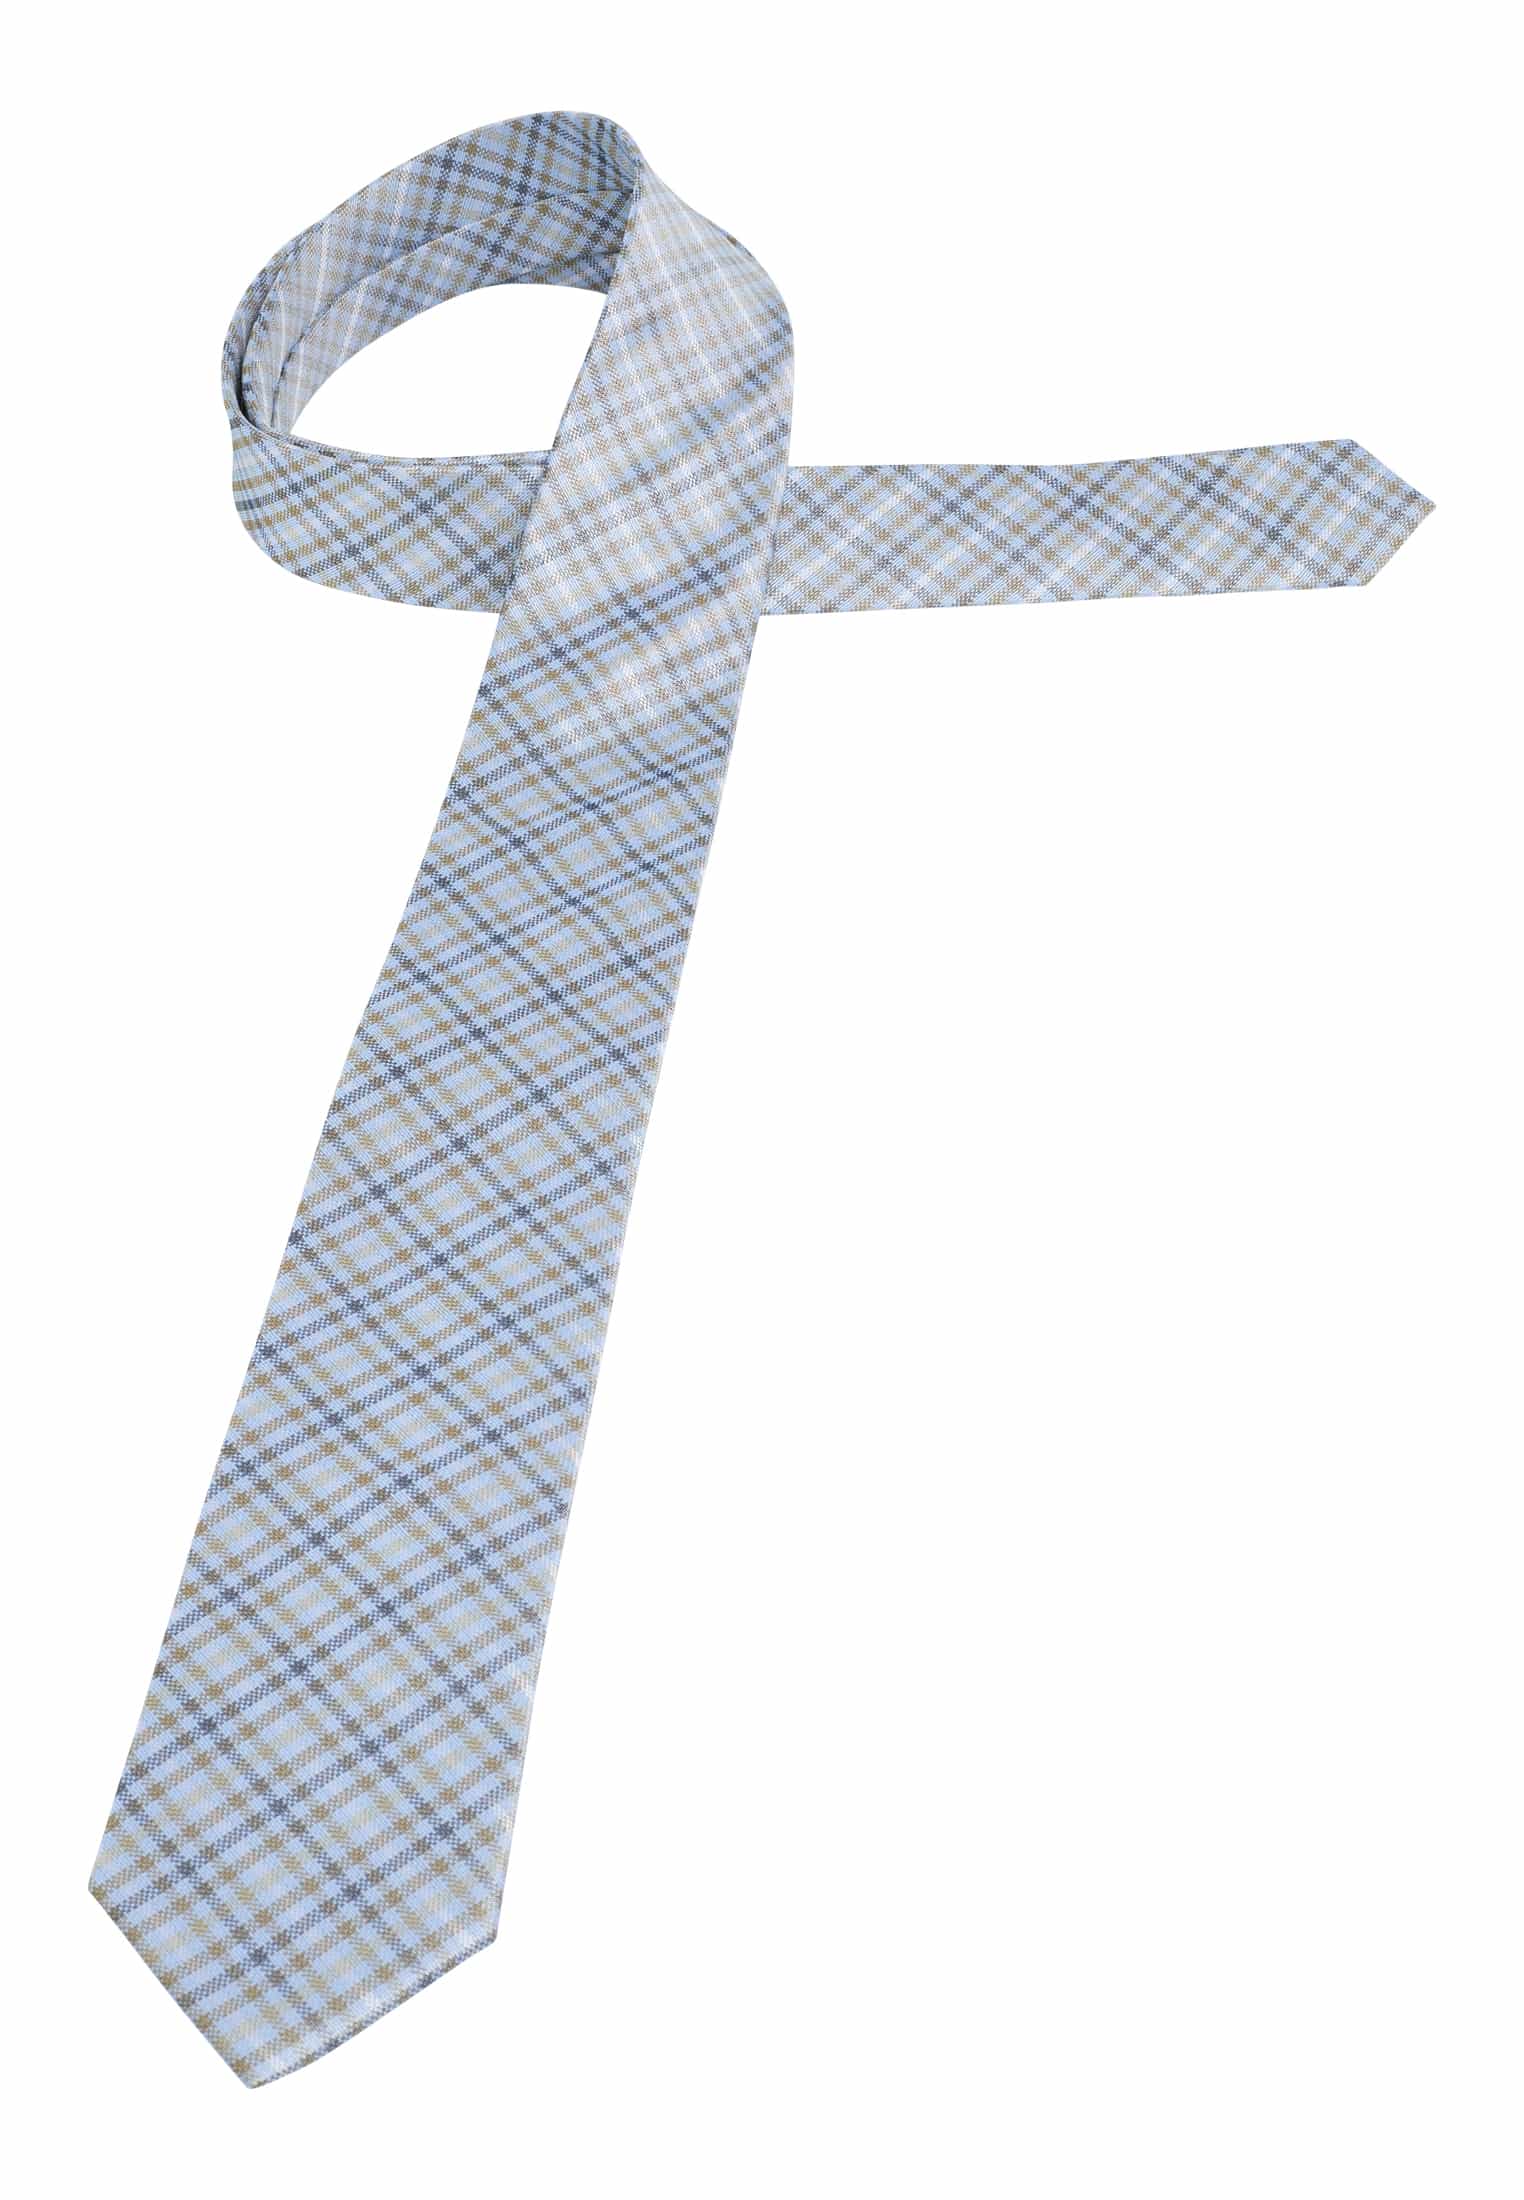 blau/grün | 142 | 1AC01961-81-48-142 blau/grün kariert Krawatte | in